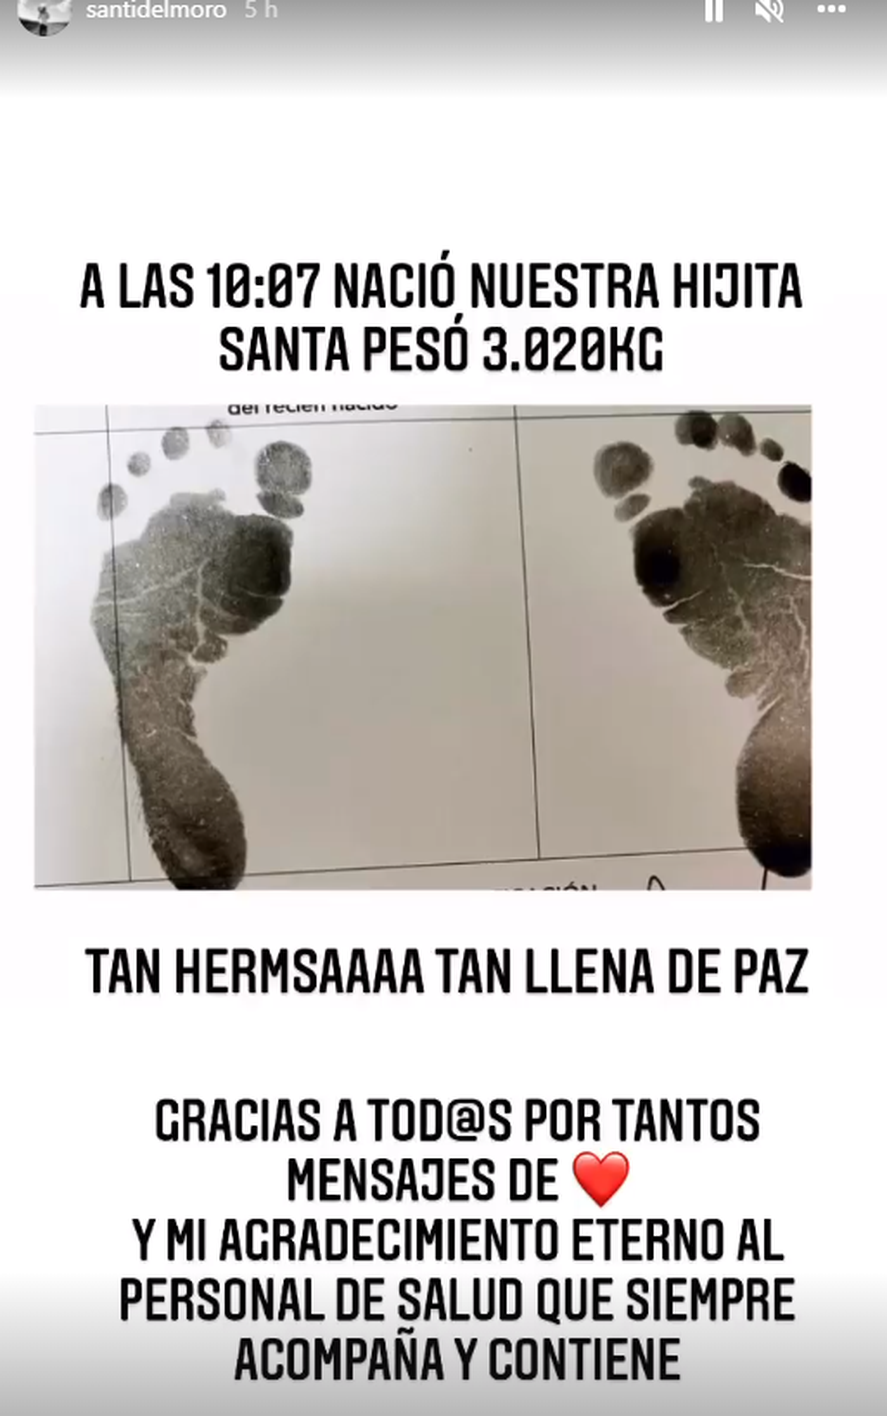 Santiago del Moroanunció el nacimiento de su hija en las redes sociales